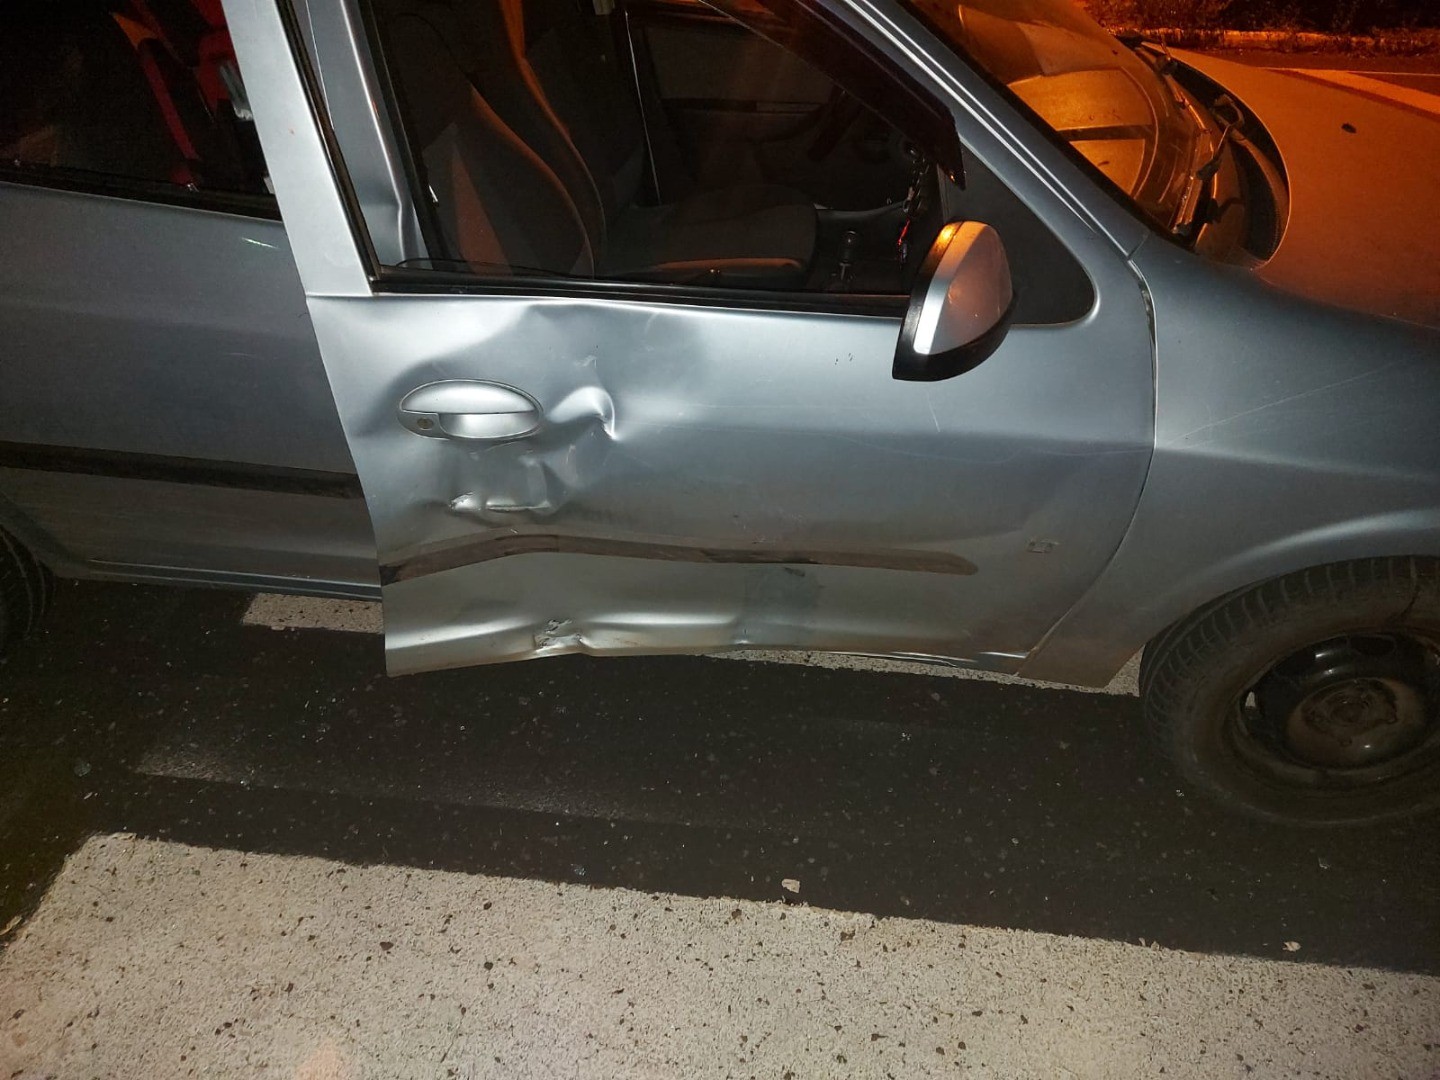 Motociclista fica ferido após colisão em carro em Cunha Porã